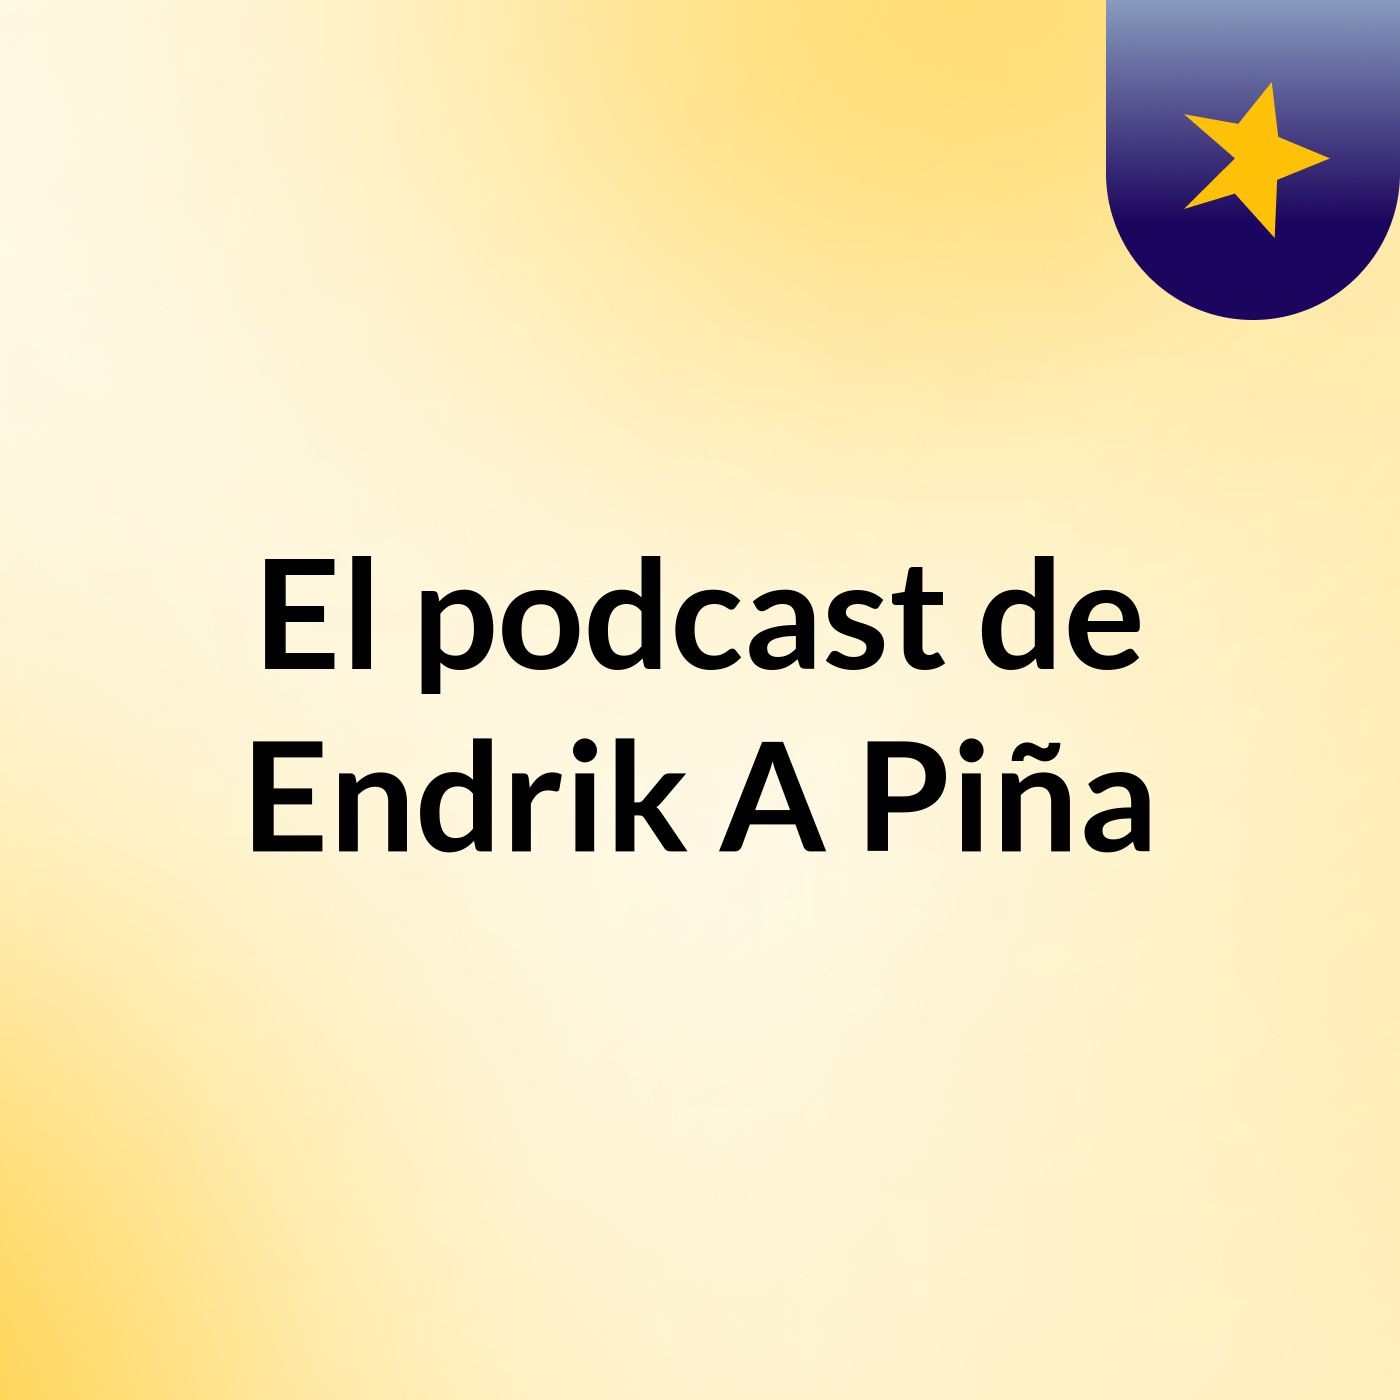 El podcast de Endrik A Piña